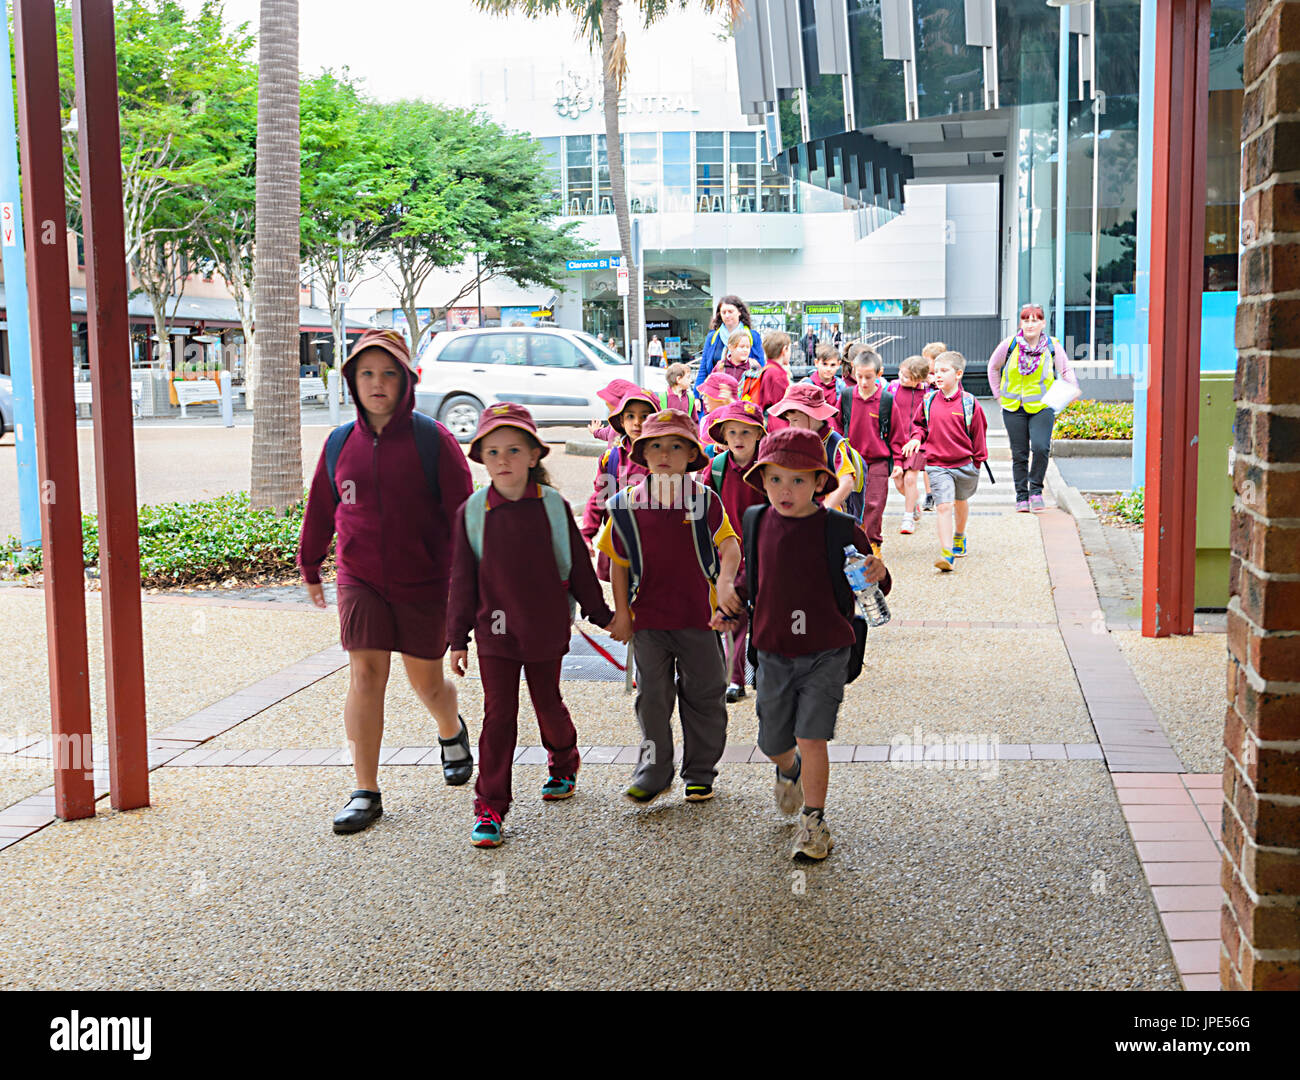 Los escolares vestidos con sus uniformes de la escuela caminando en la calle en un día de escuela Aventura, Port Macquarie, Nueva Gales del Sur (NSW, Australia Foto de stock